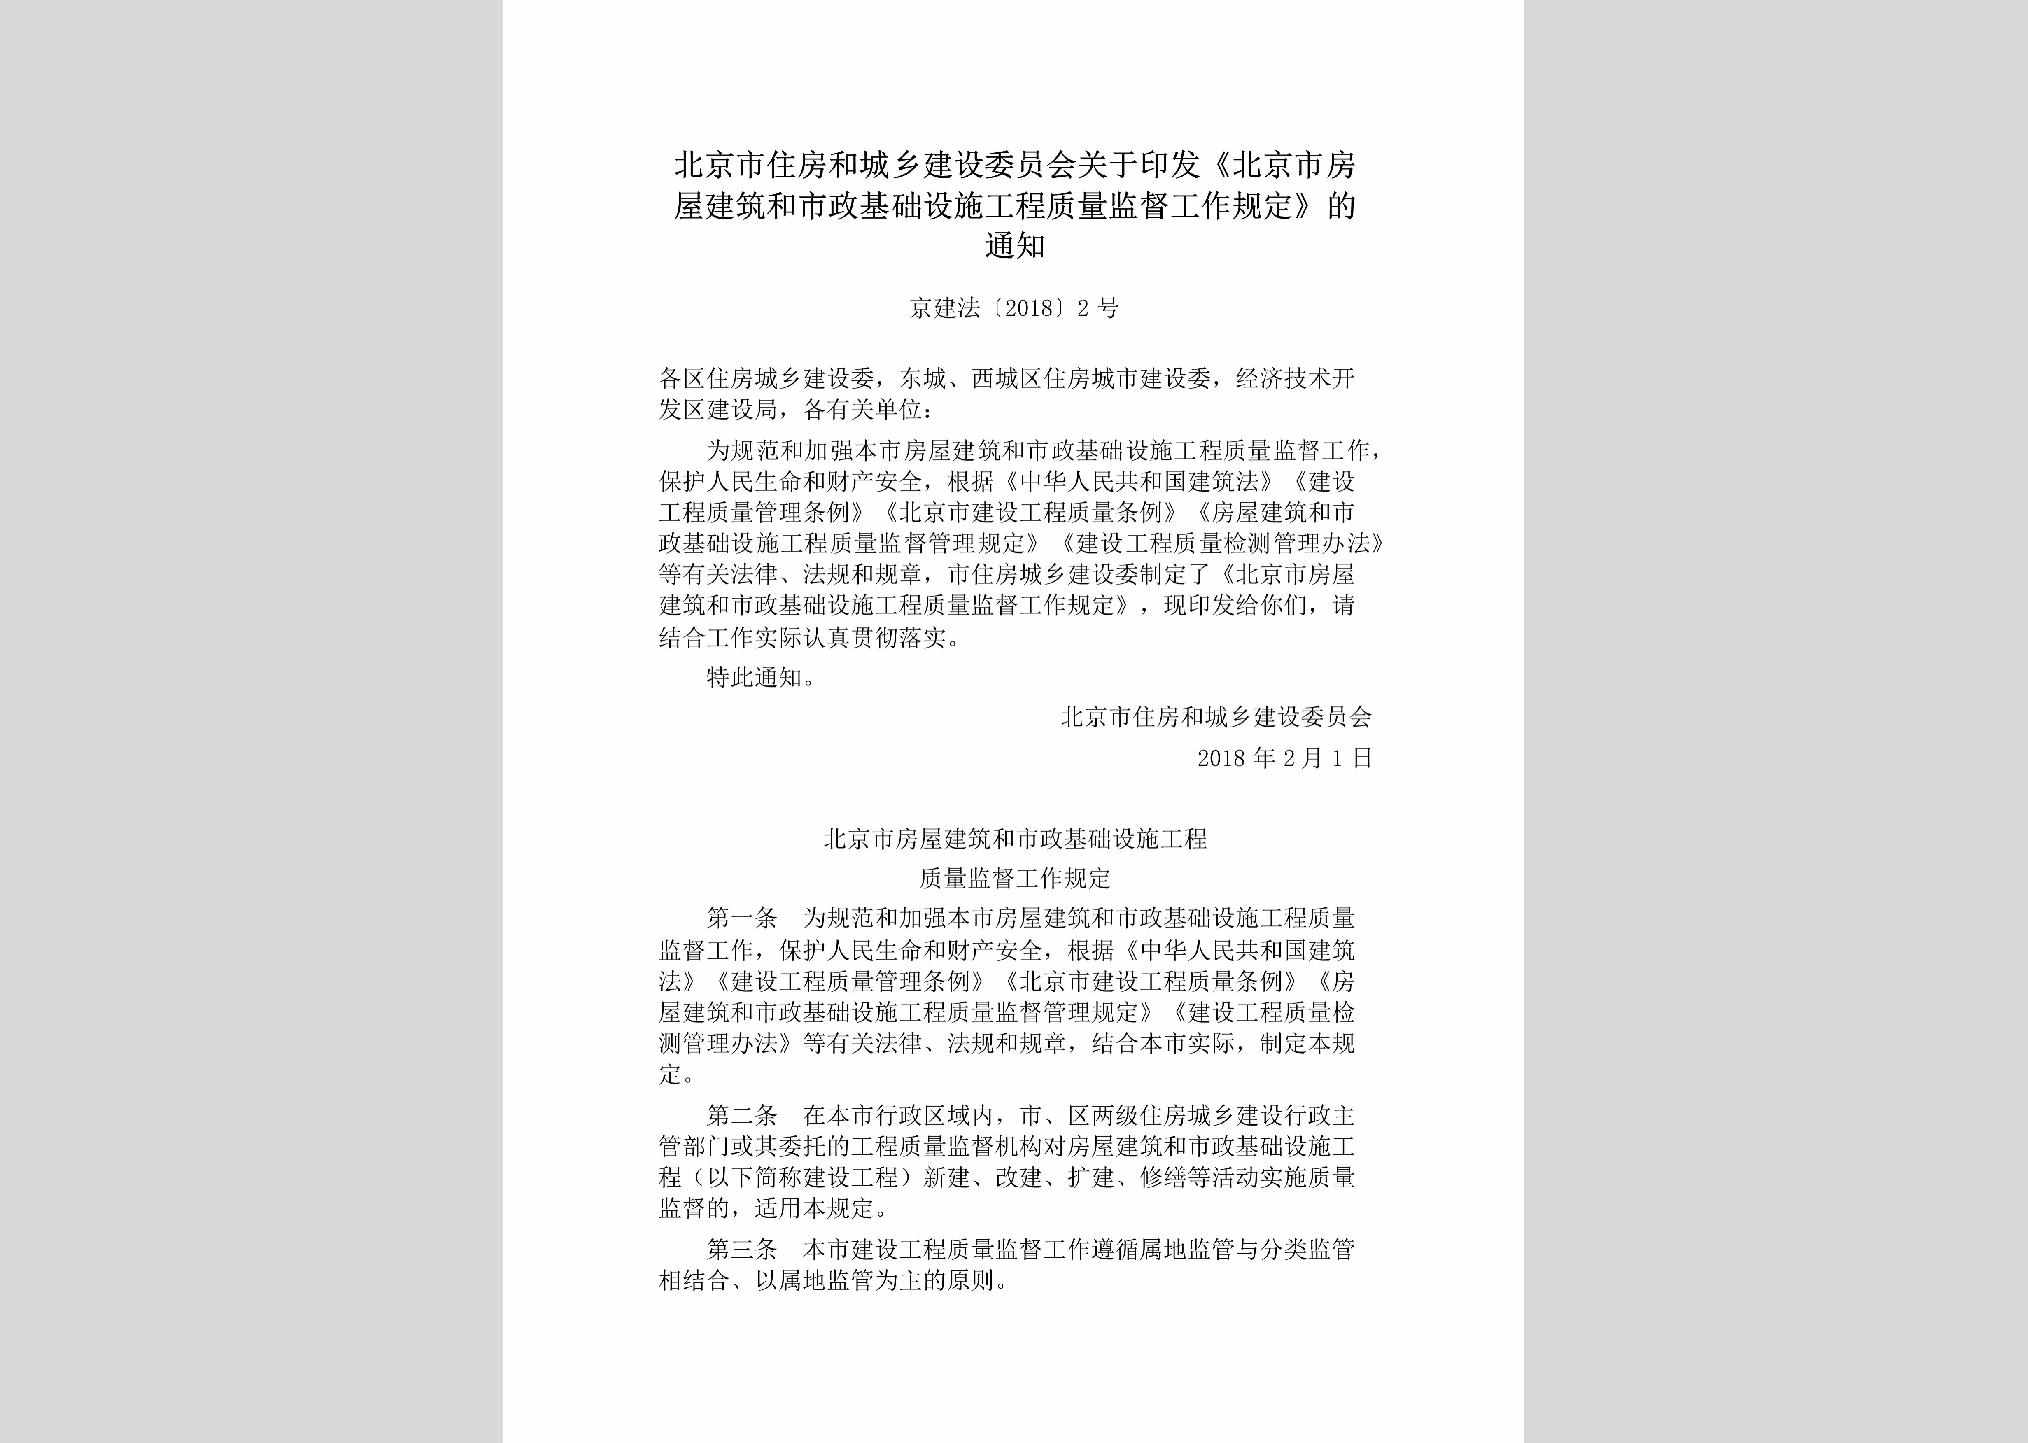 京建法[2018]2号：北京市住房和城乡建设委员会关于印发《北京市房屋建筑和市政基础设施工程质量监督工作规定》的通知